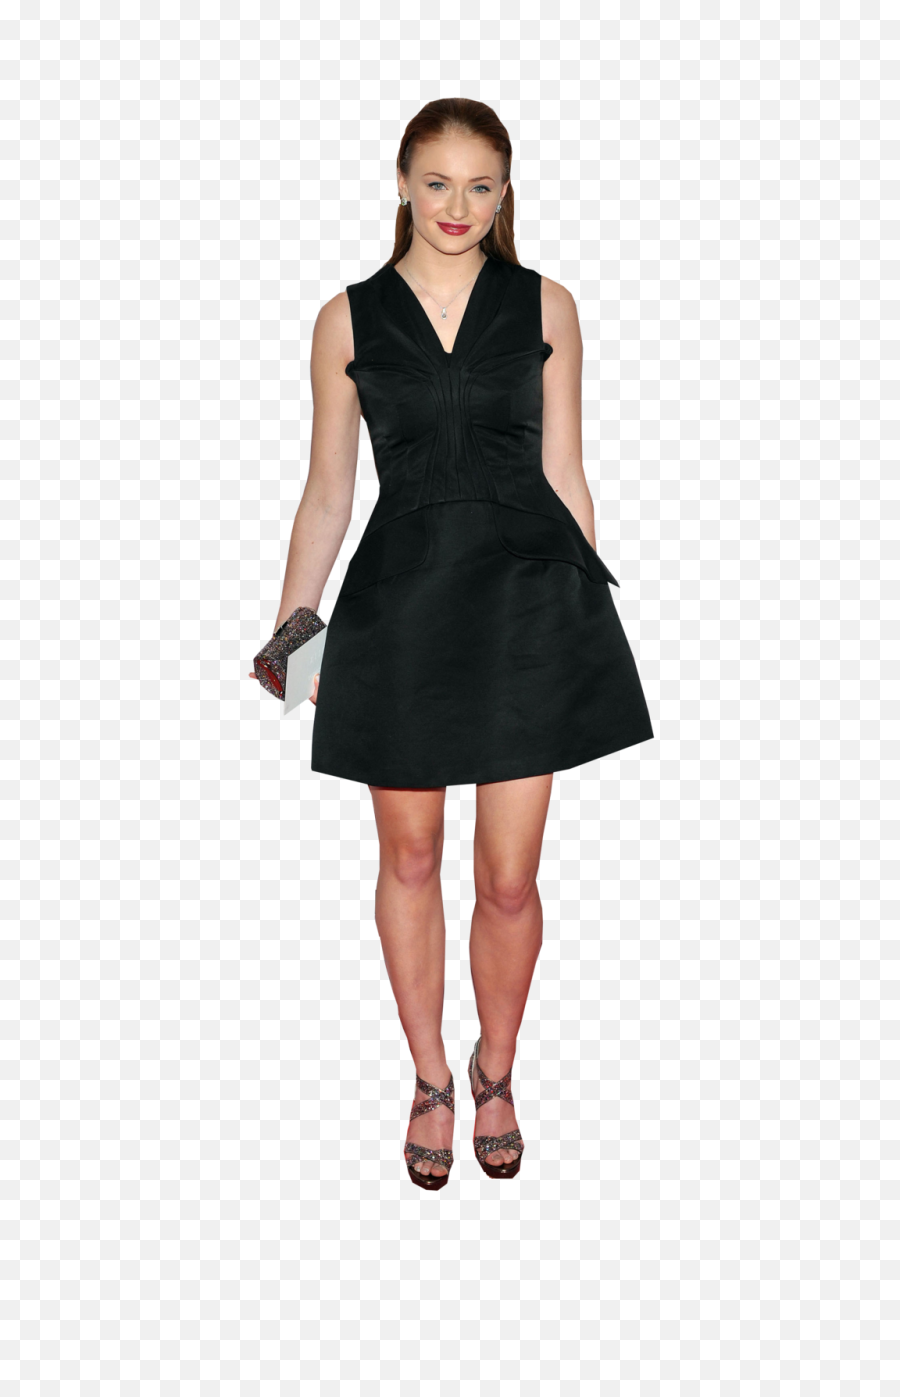 Sophie Turner Transparent Image - Siyah Elbise Mezuniyet Png,Sophie Turner Png